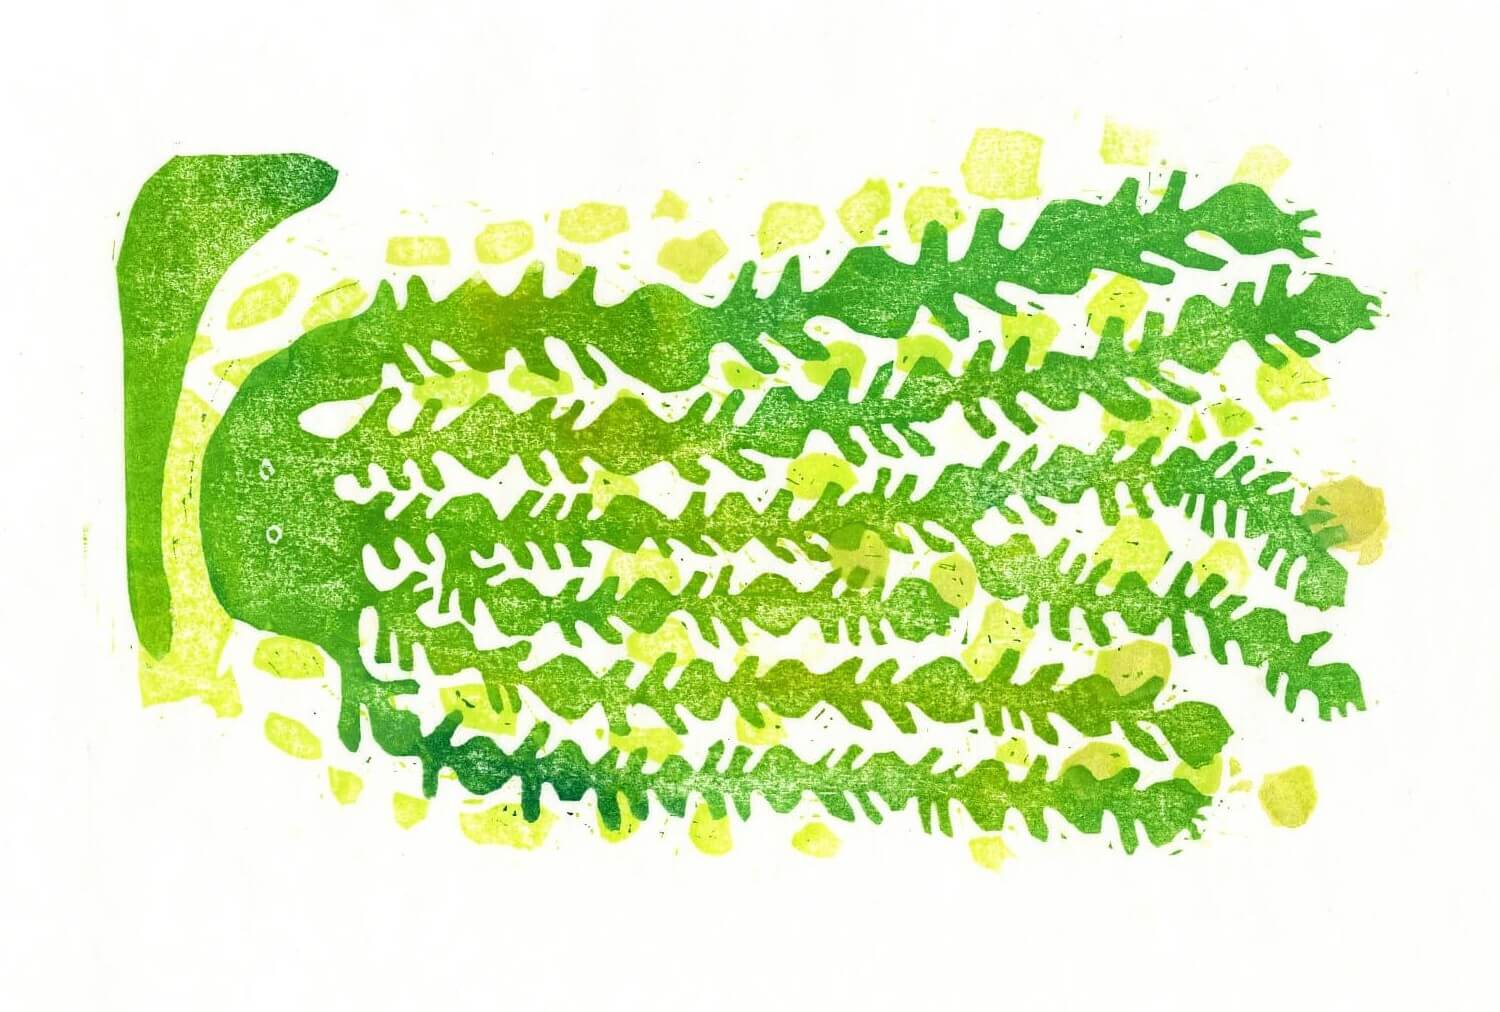 木版画作家・尾崎和美の個展「green mood」、Calo Bookshop & Cafeにて開催中。心の奥にある緑色を表現。